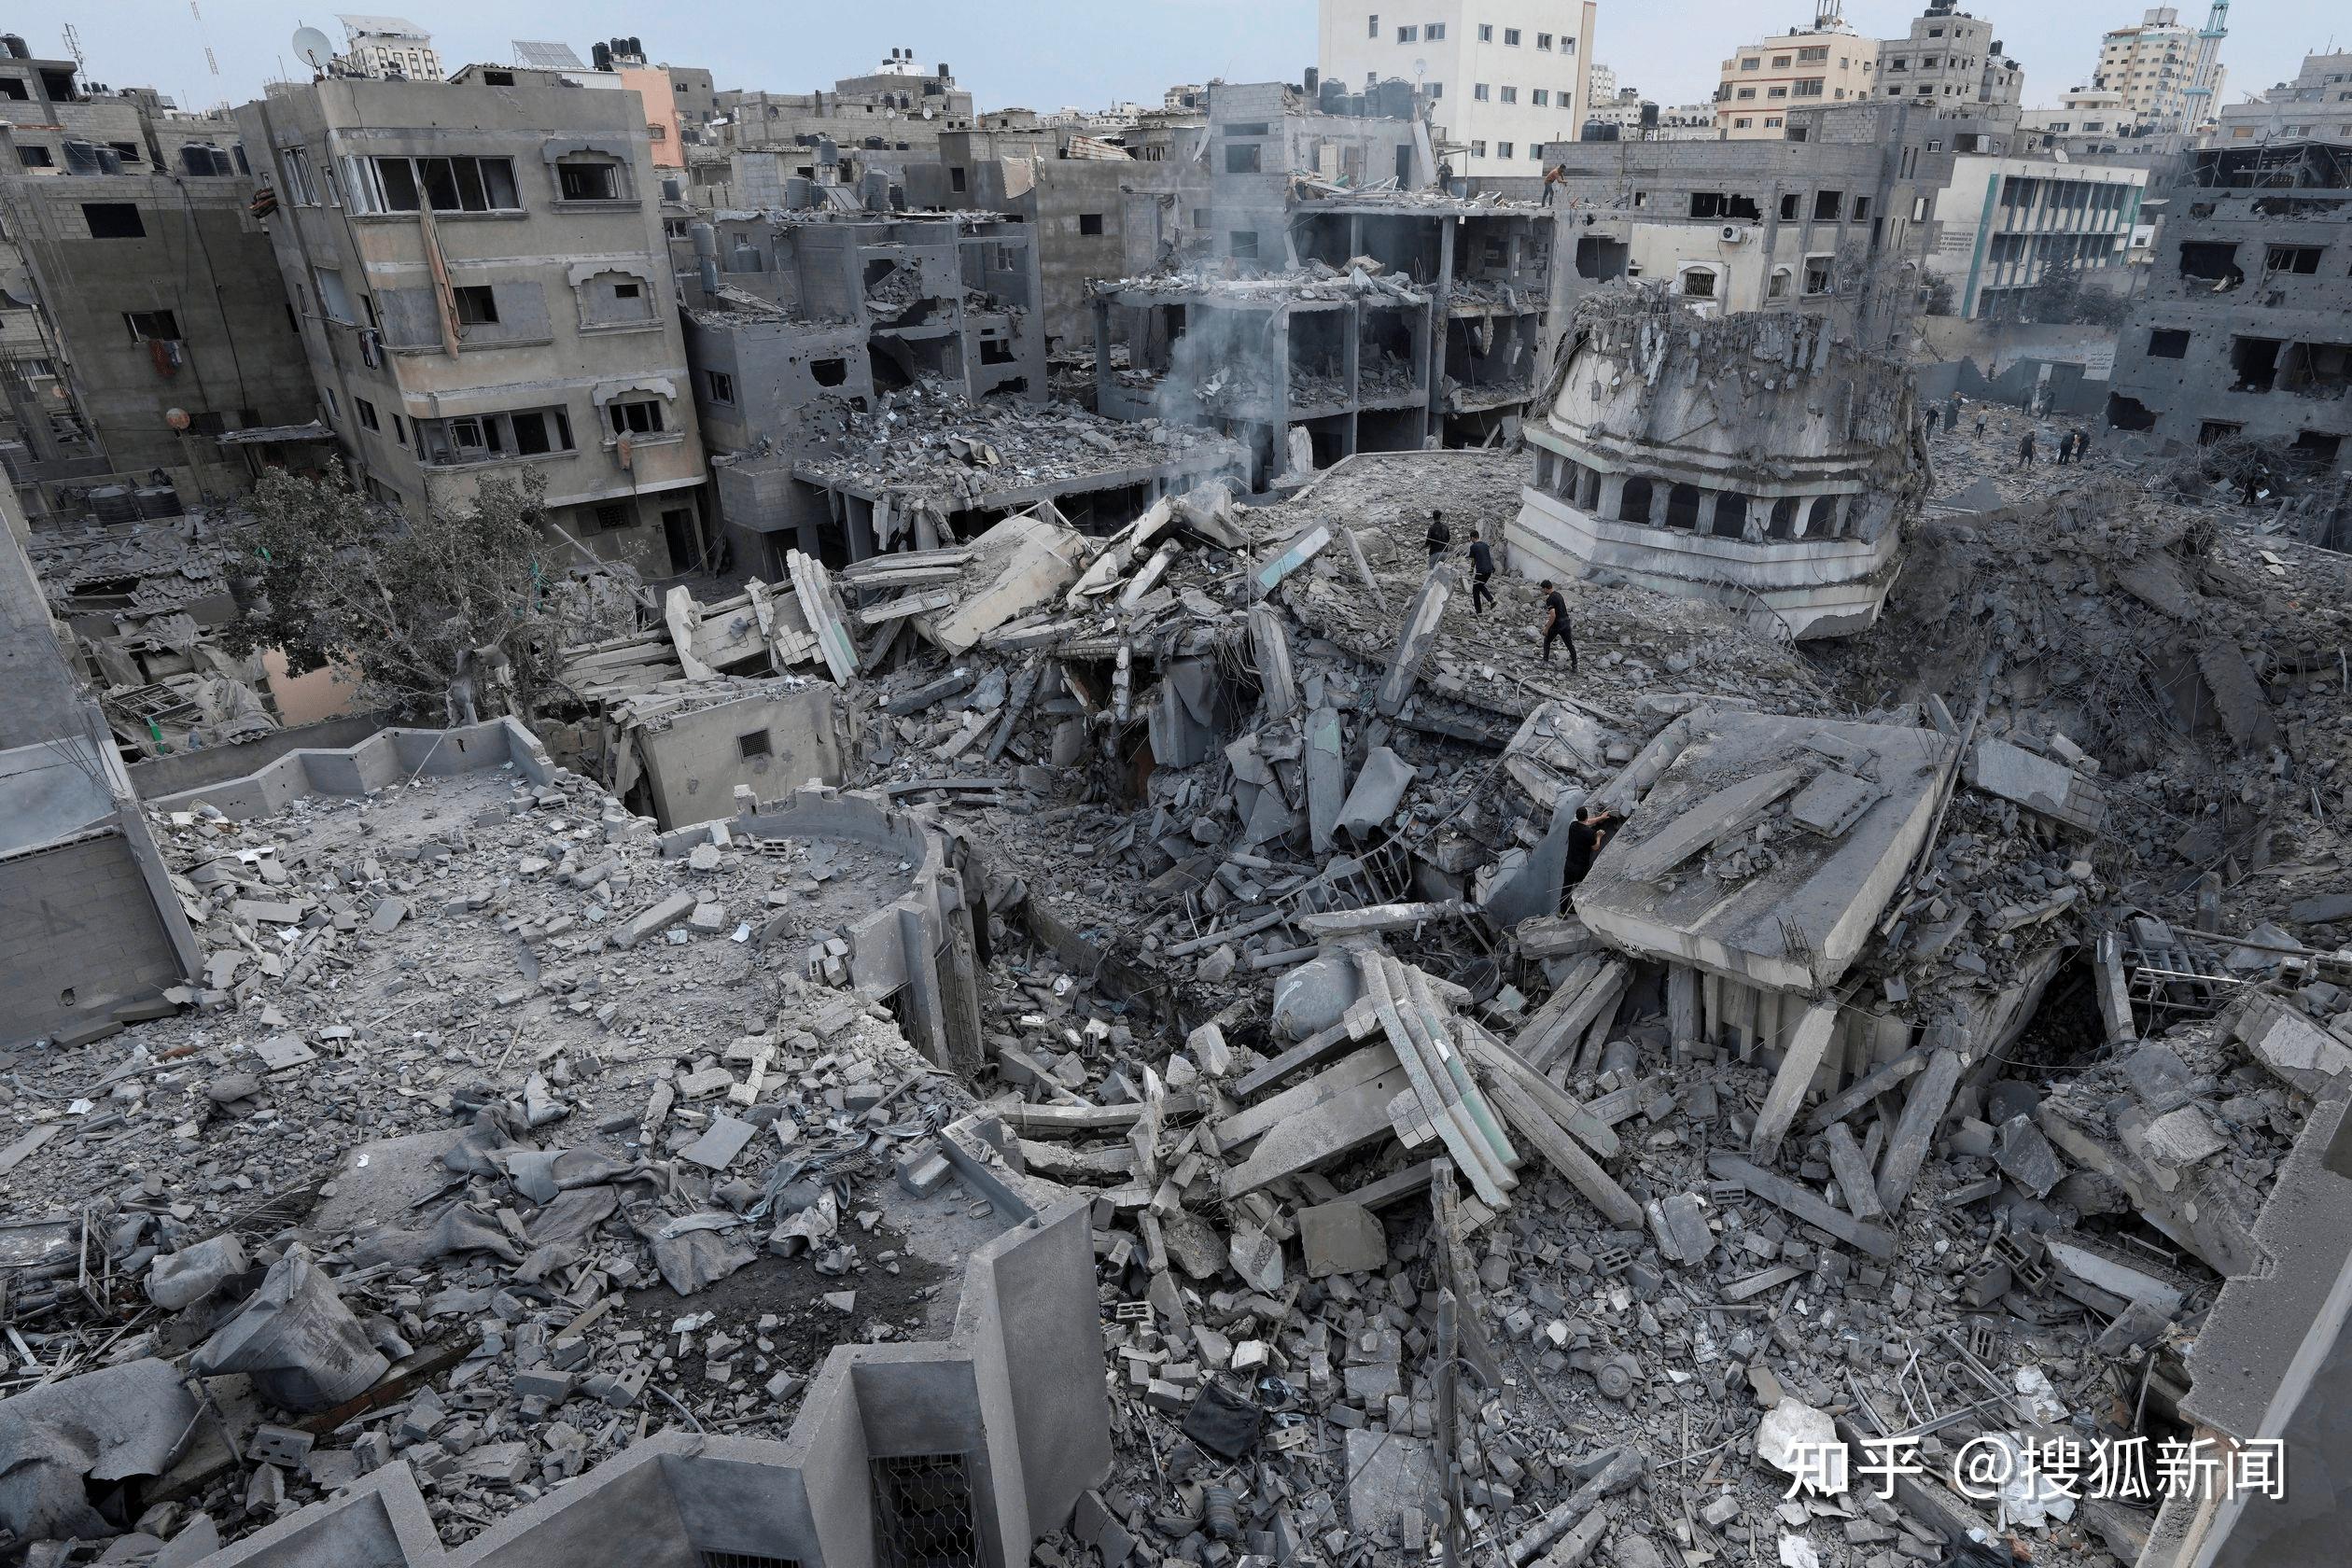 巴以冲突现状一览:以军进入加沙城郊区 人道主义危机仍加剧